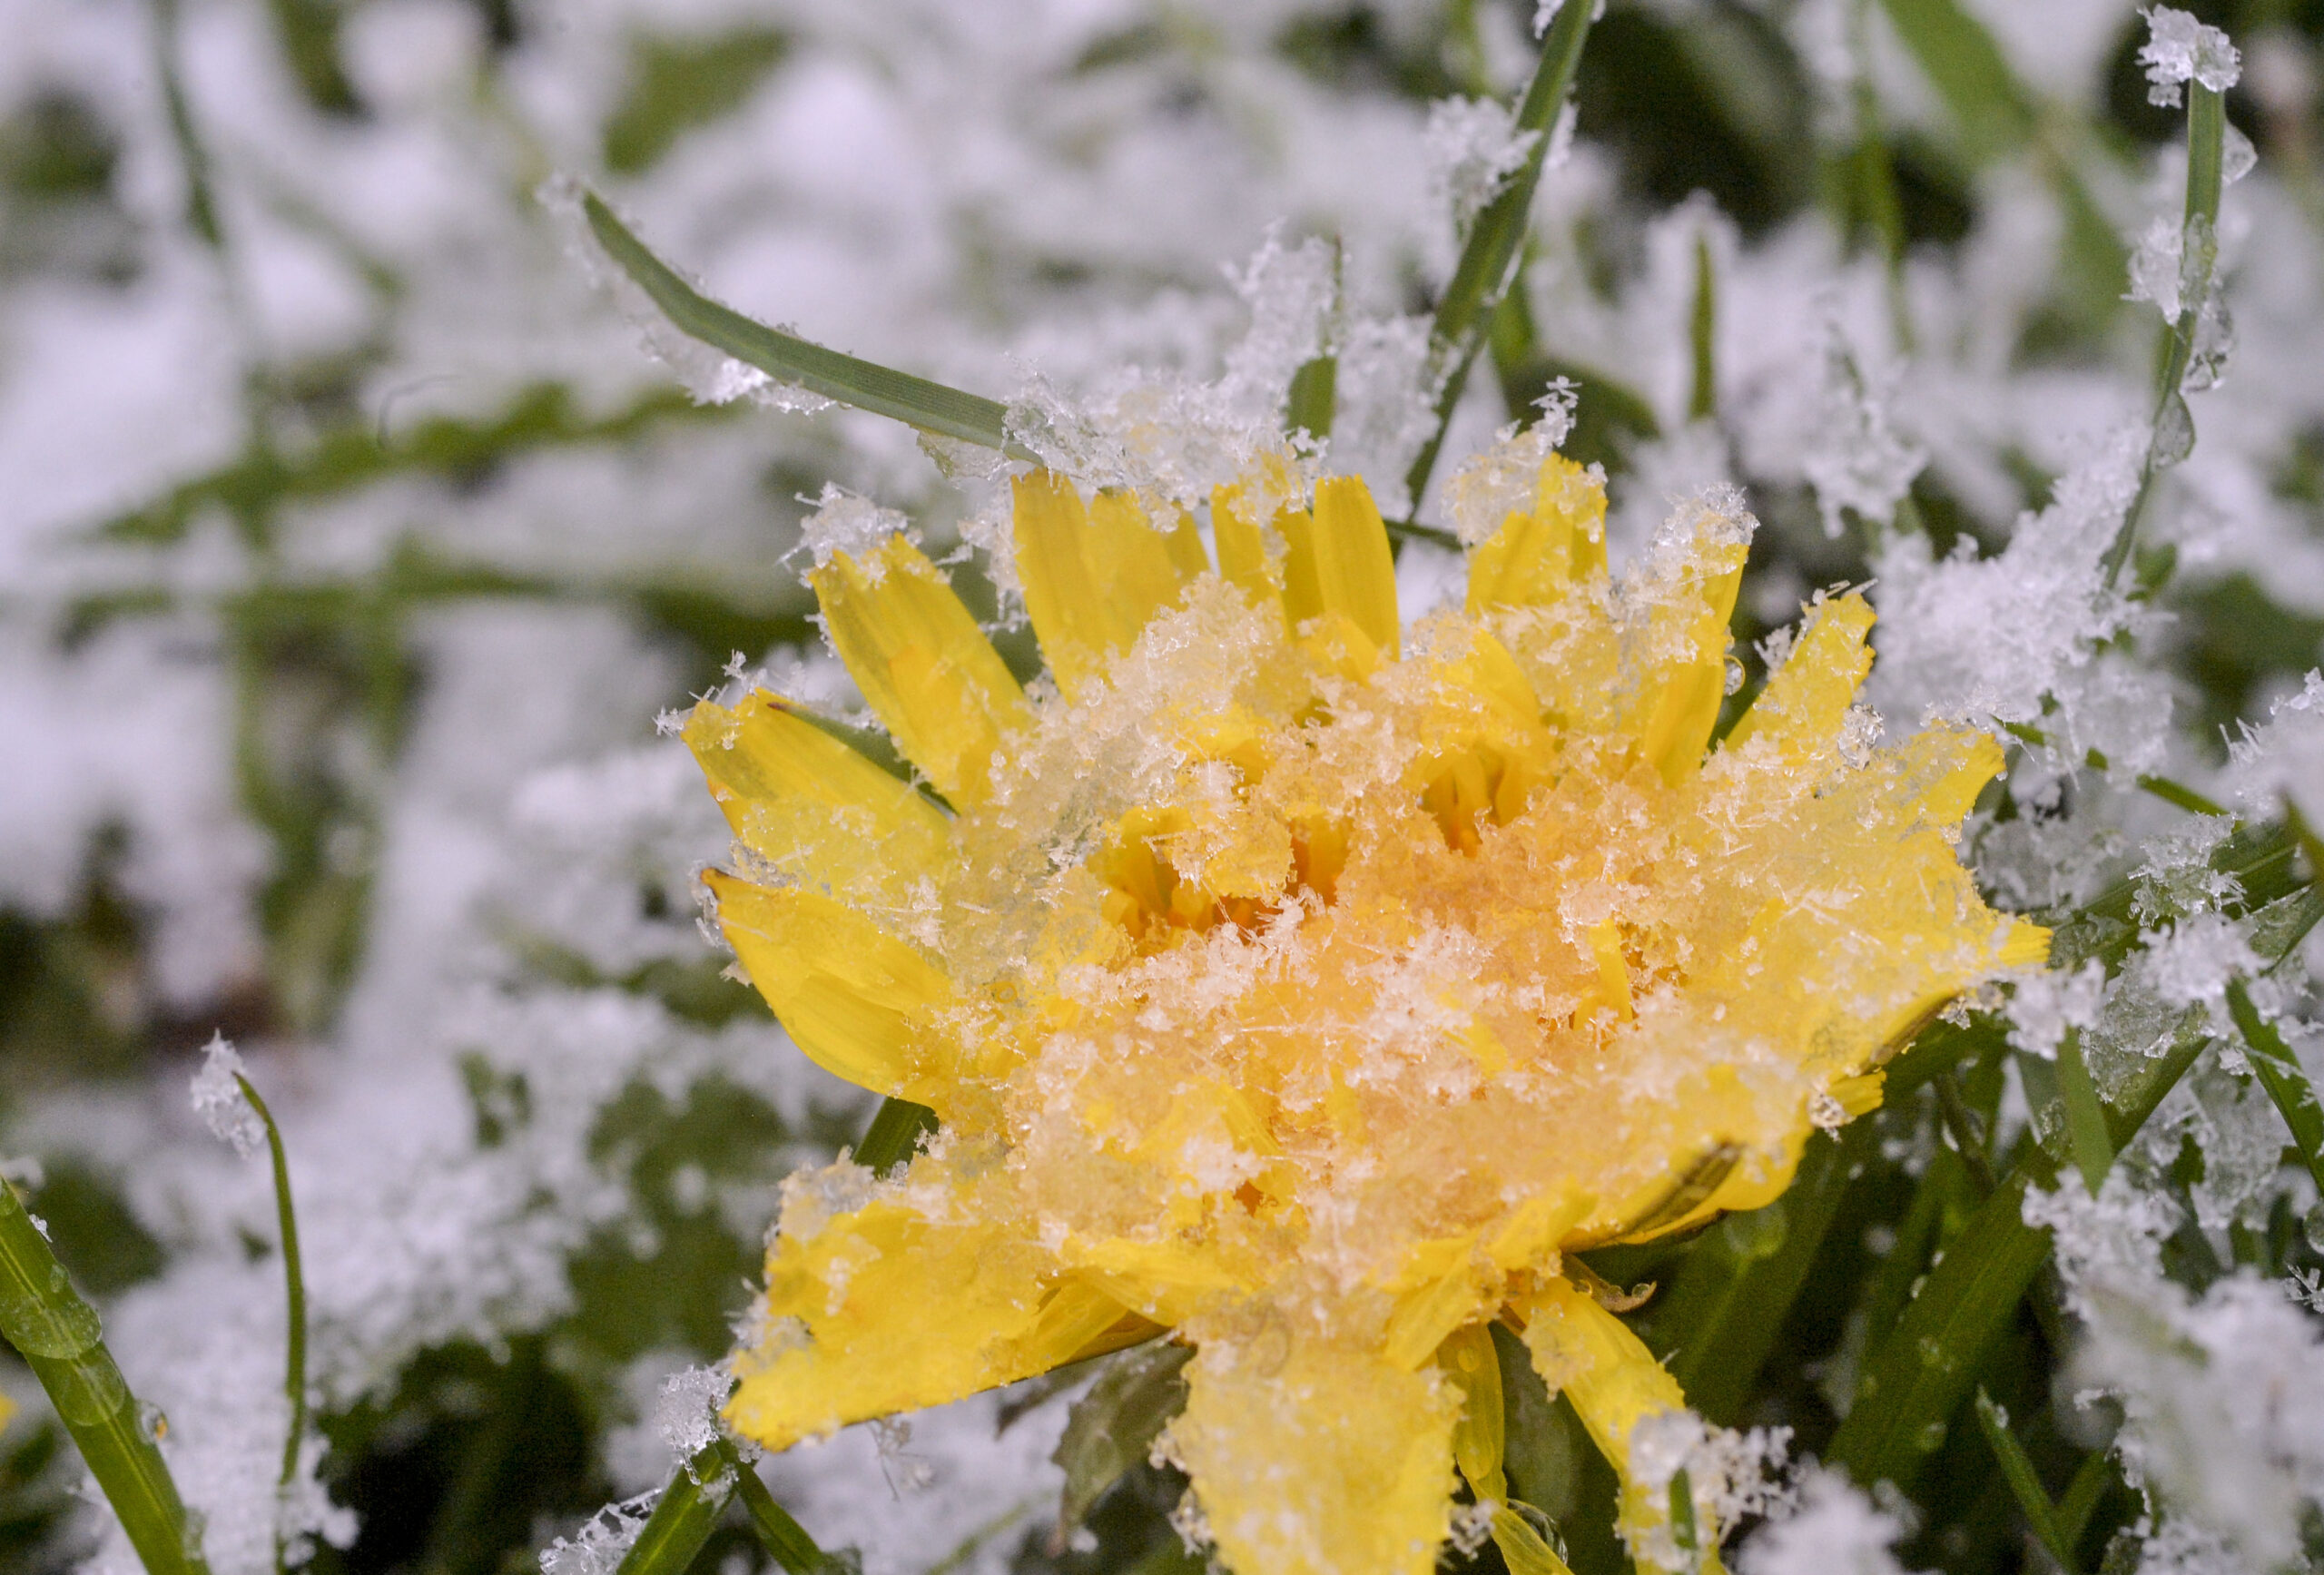 snow flower